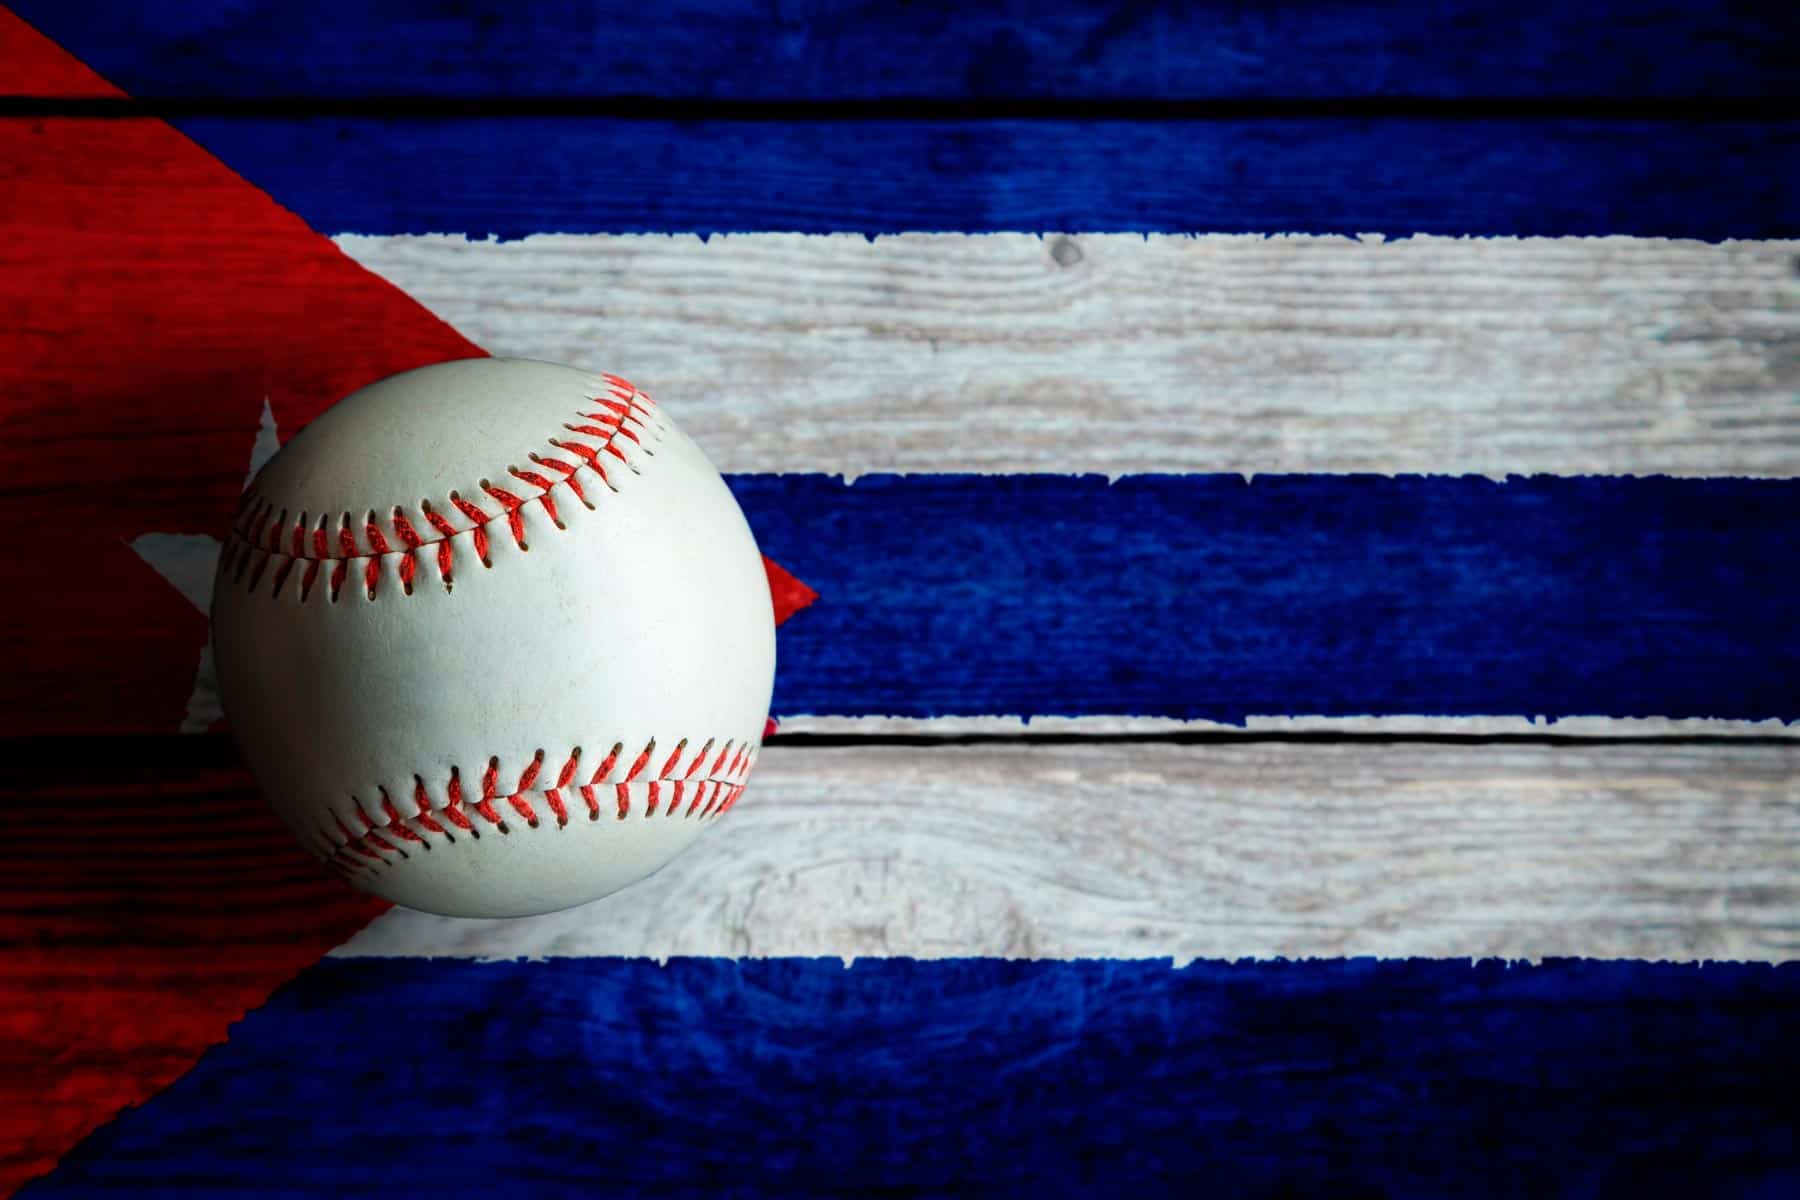 Informan sobre Premiaciones del Béisbol Cubano y Próximo Tryout